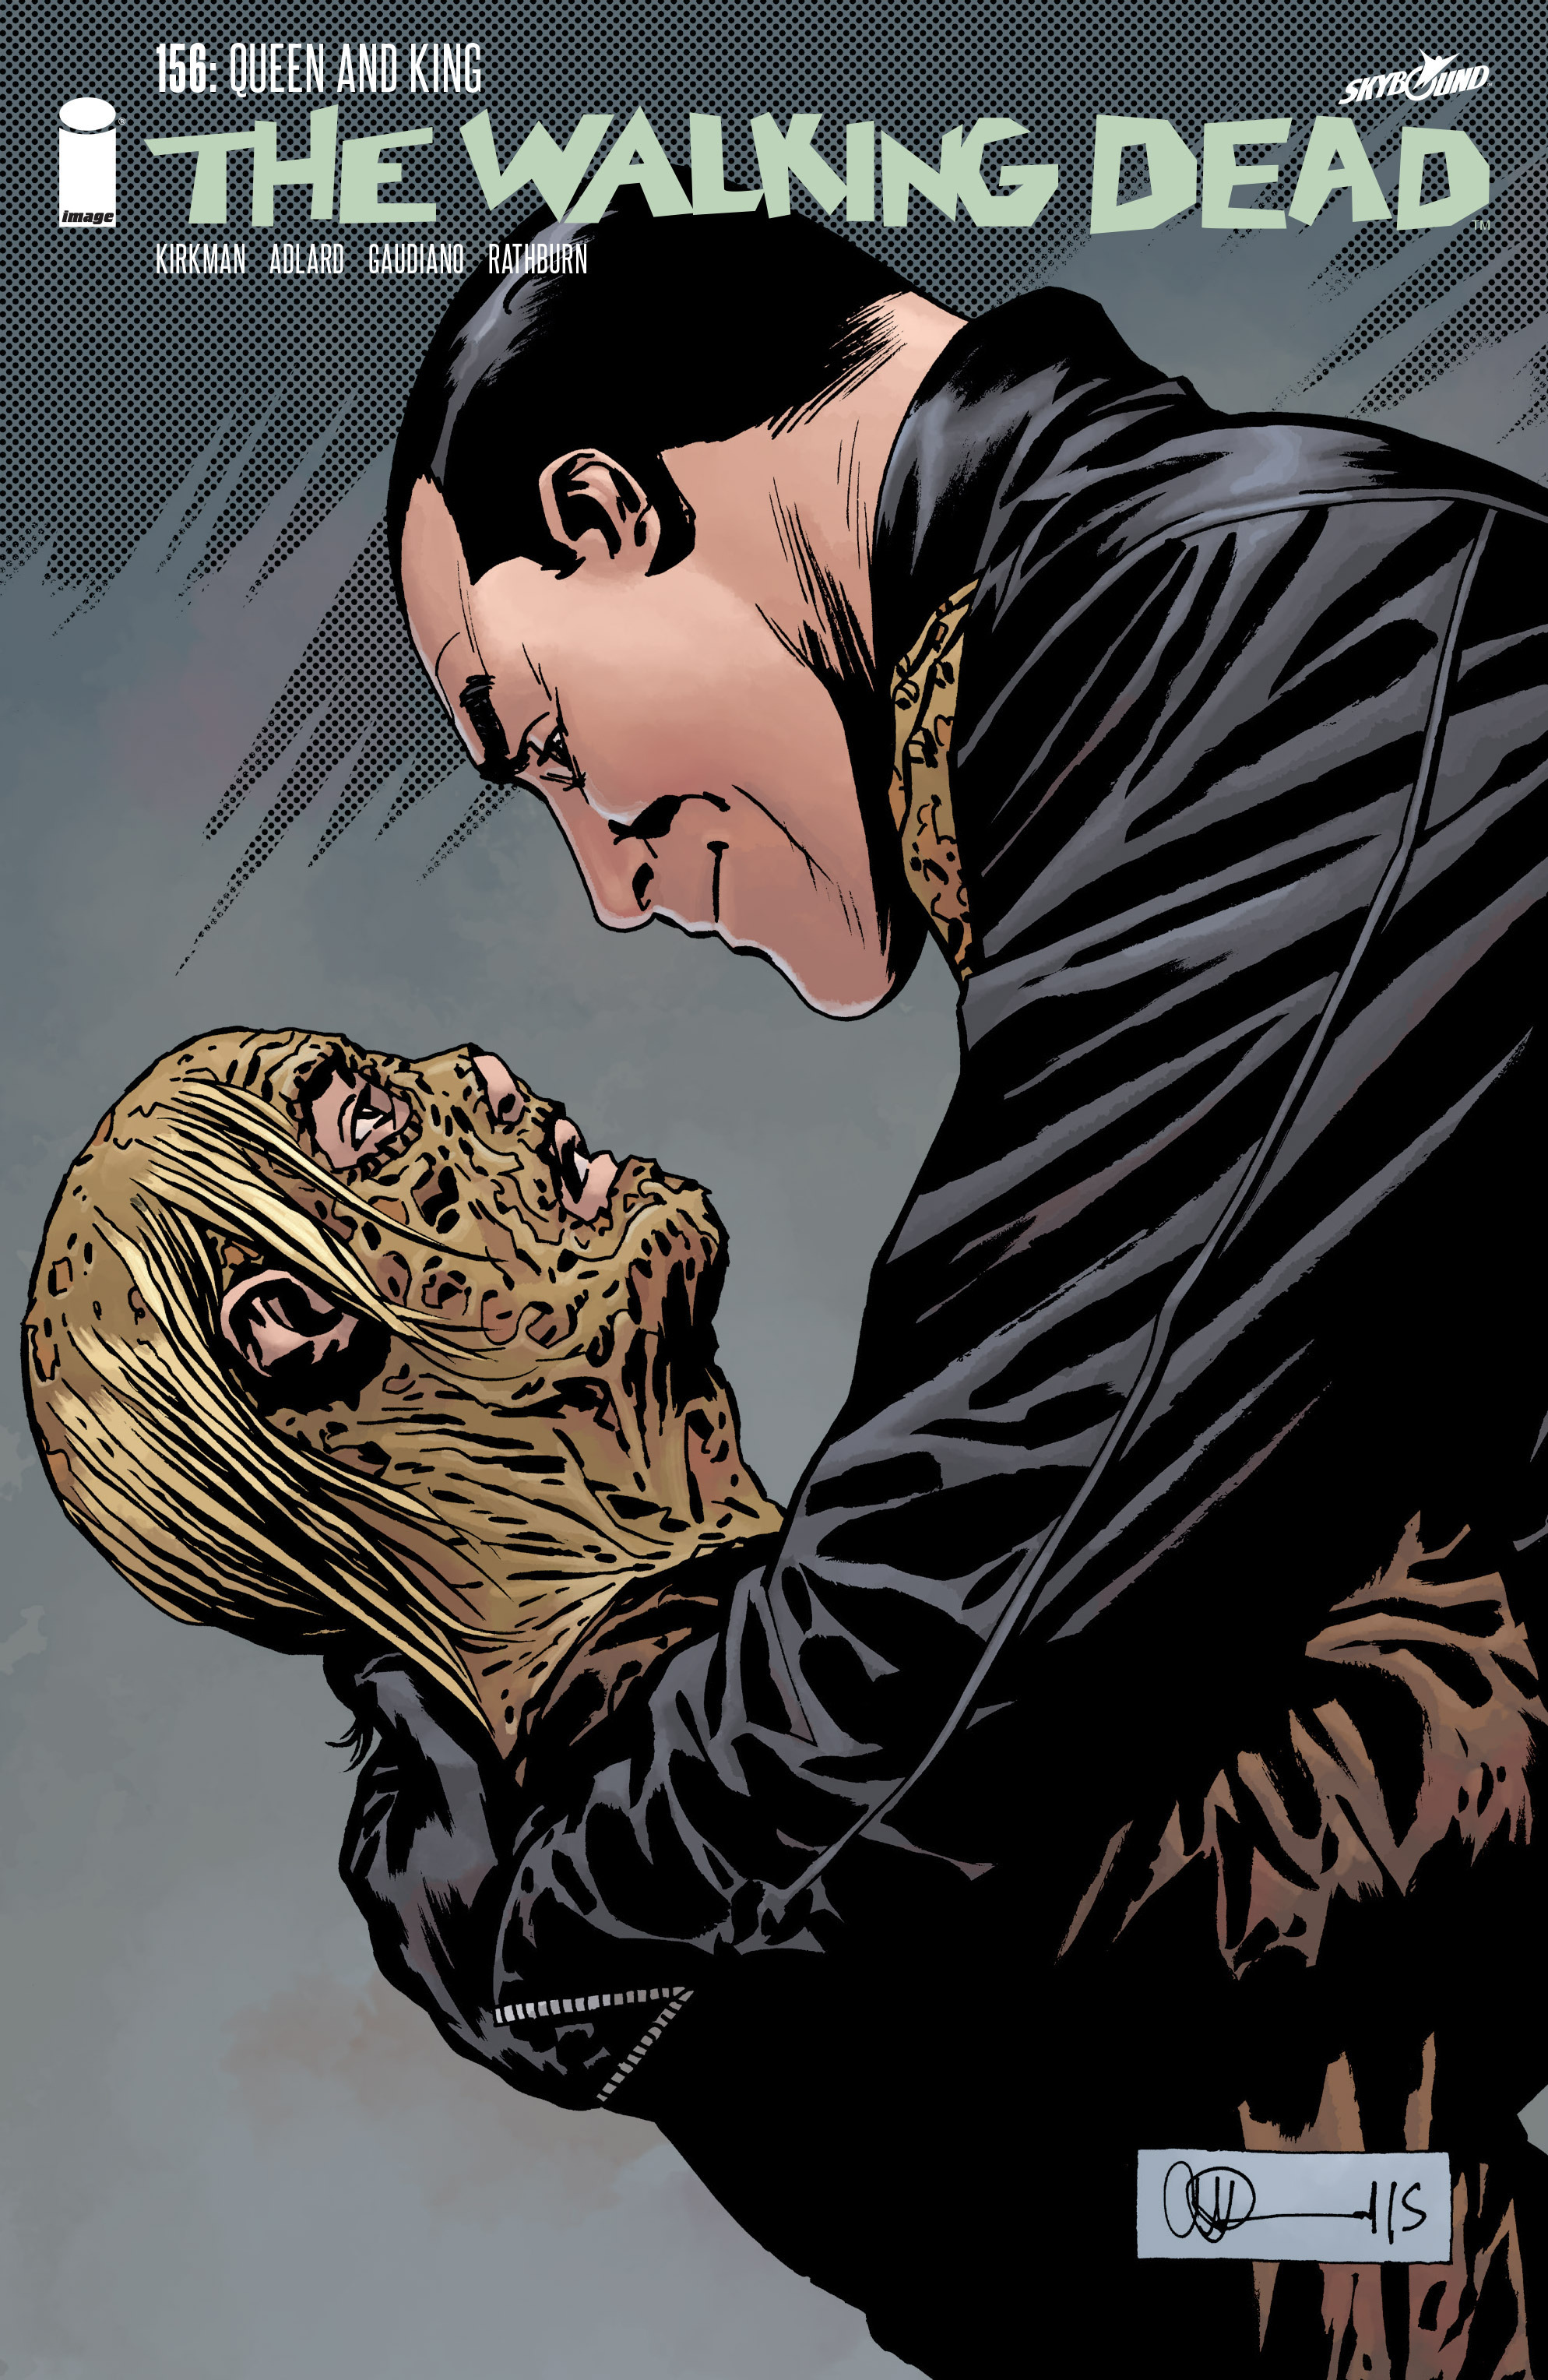 Read online The Walking Dead comic -  Issue #156 - 1